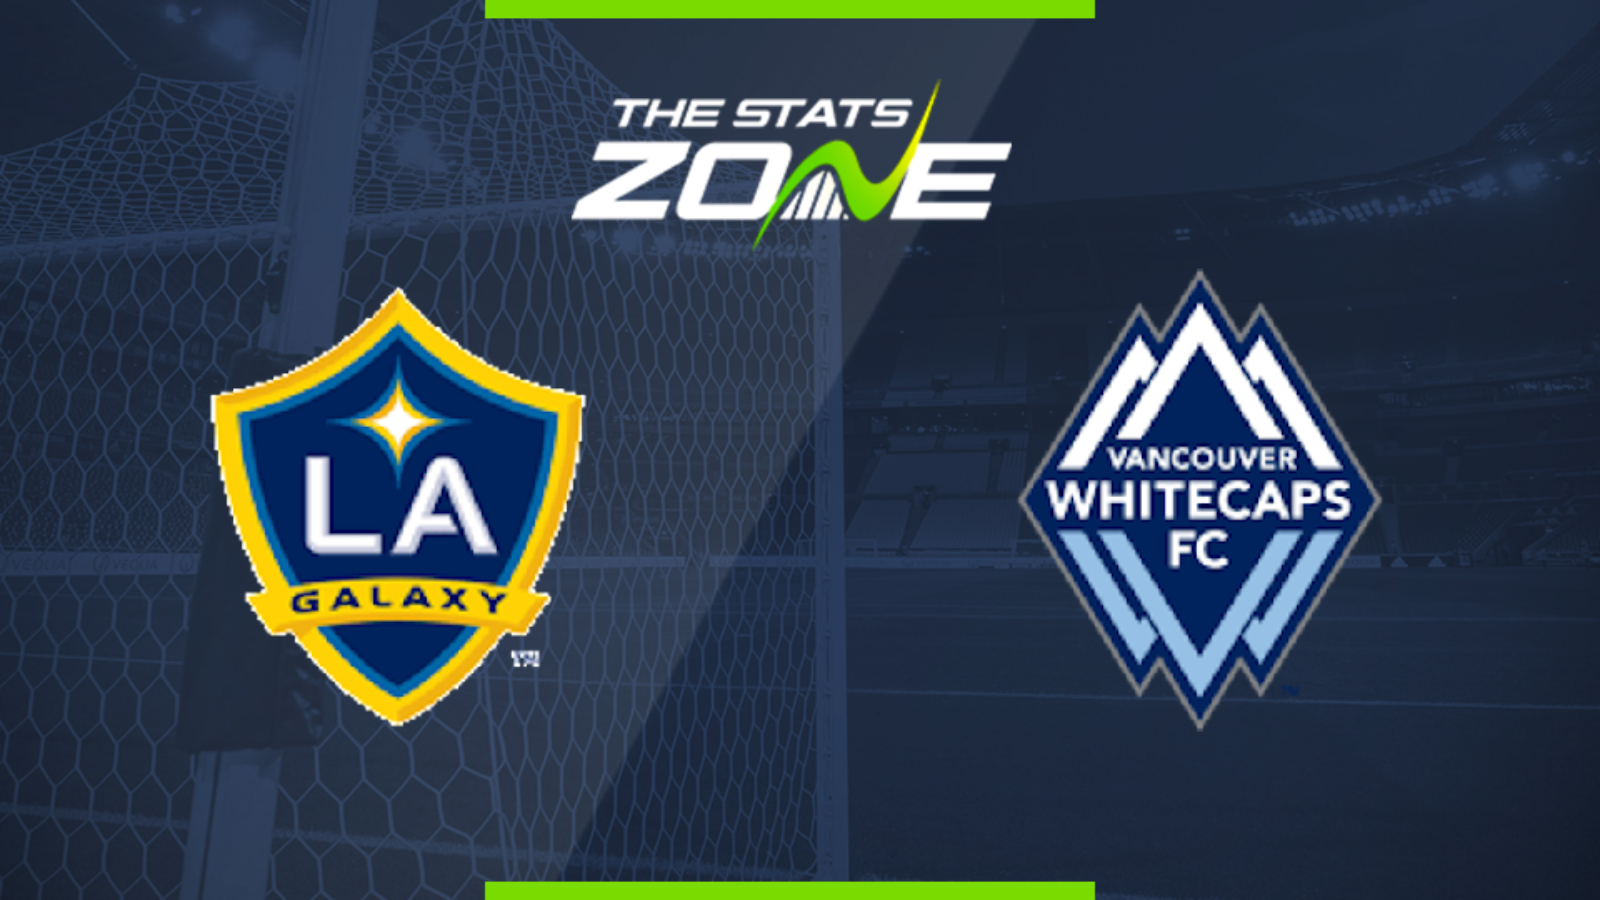 2019 MLS – LA Galaxy vs Vancouver Whitecaps Preview & Prediction - The Stats Zone